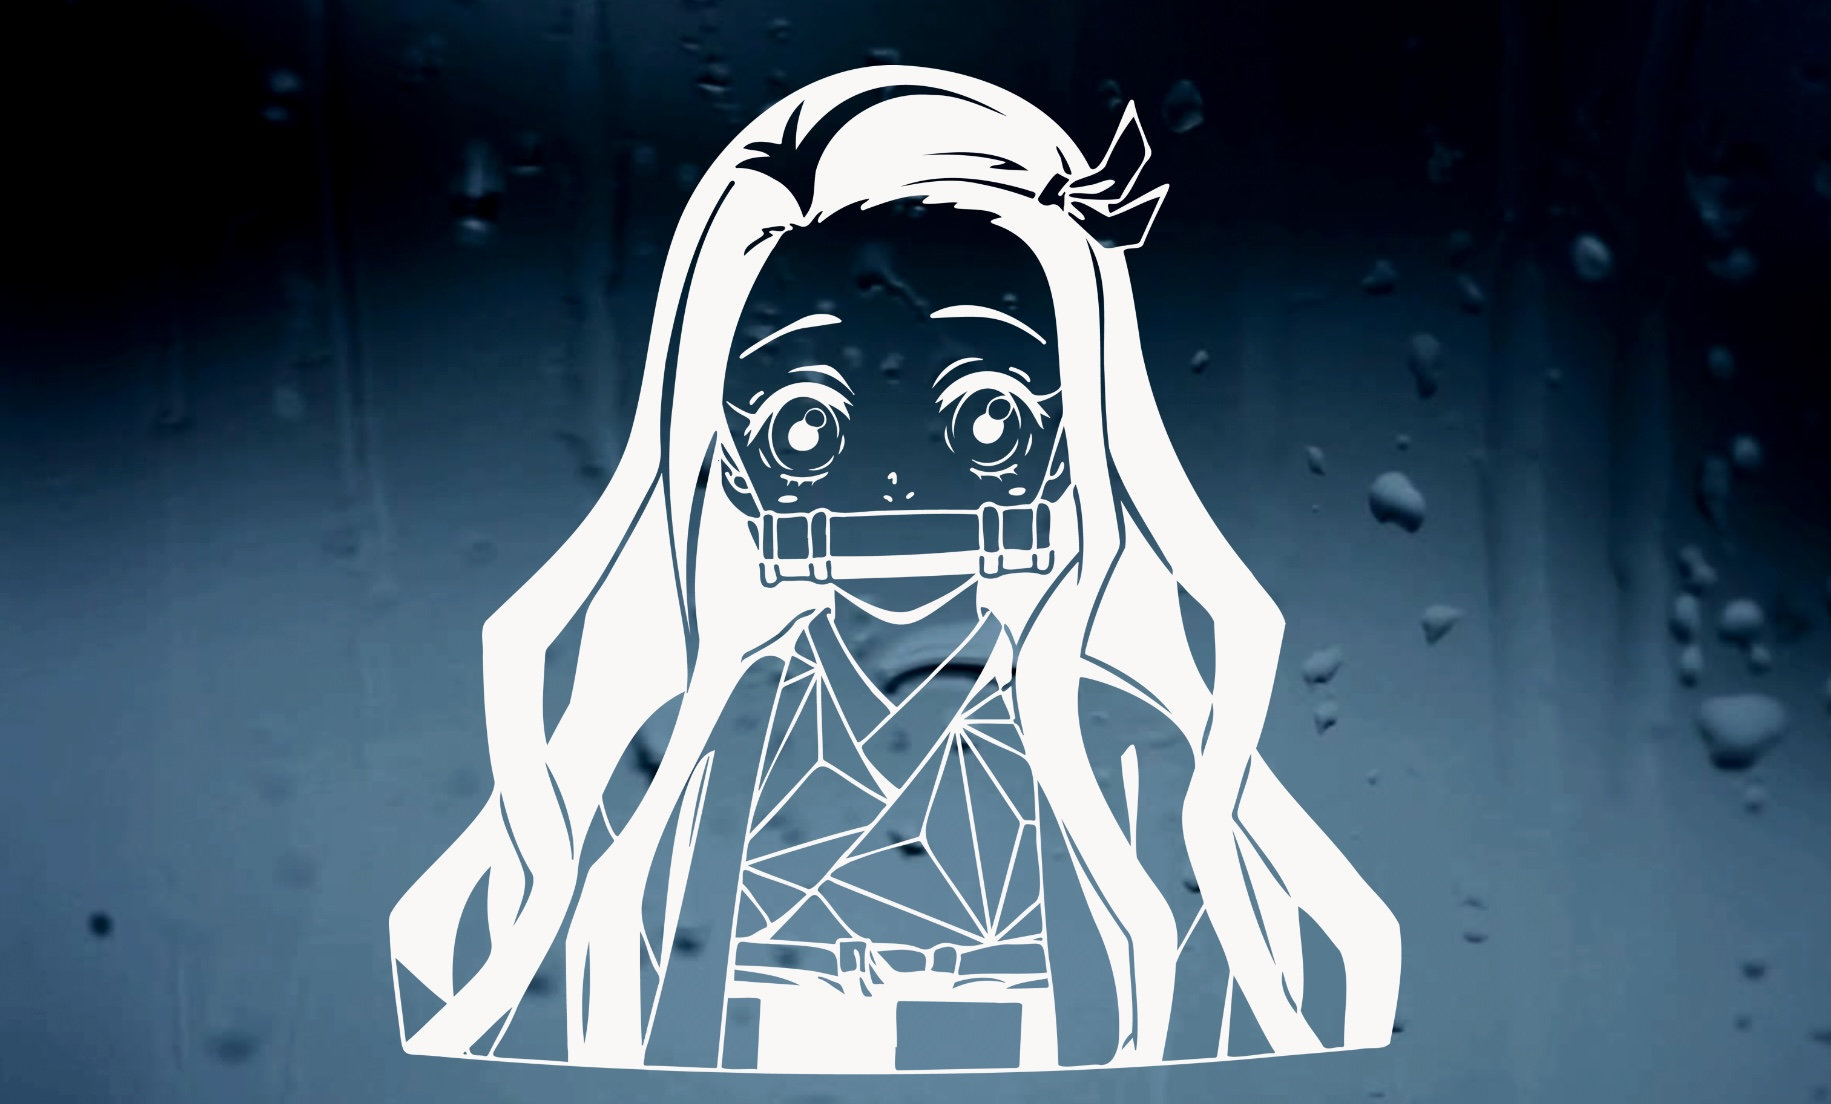 Nezuko - Anime Girl - Beach Waifu - Satin Poster - Original Demon Slayer Art